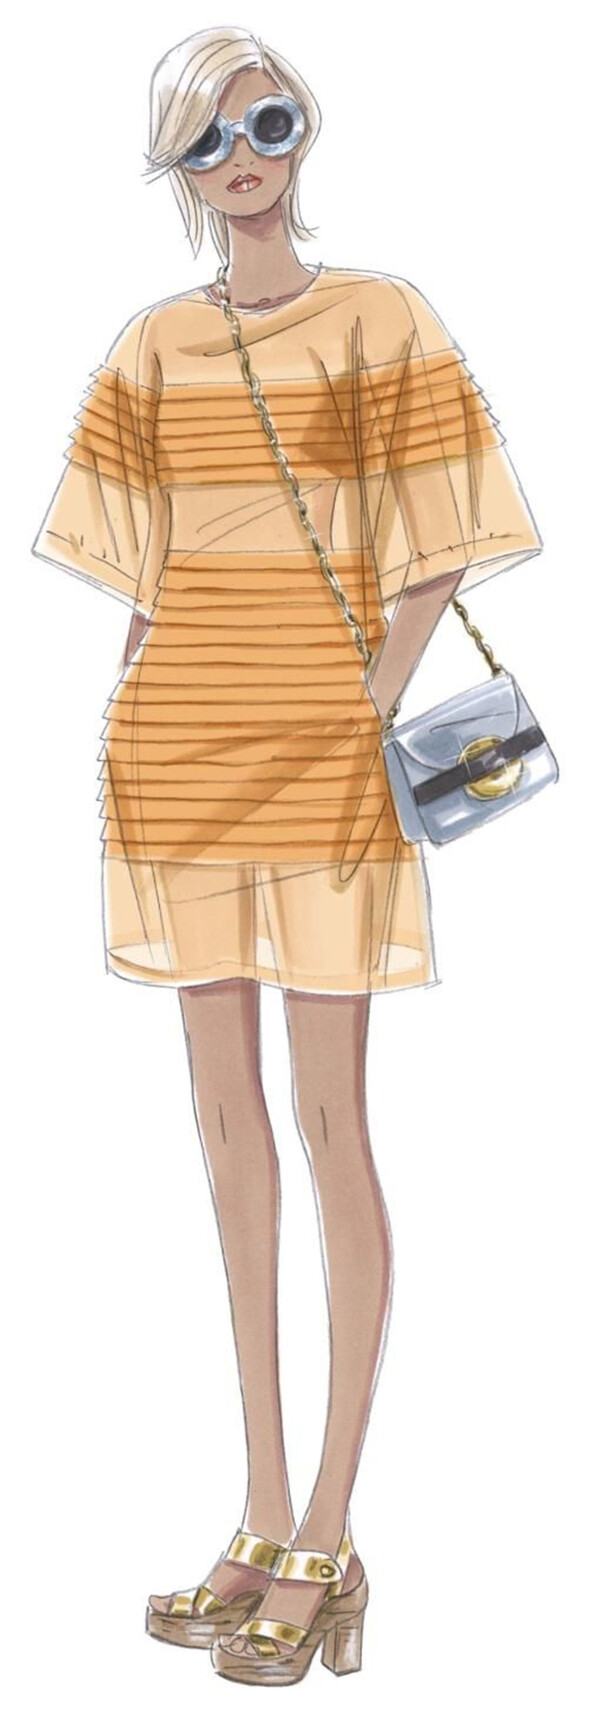 时尚潮流橙黄色条纹连衣裙女装效果图